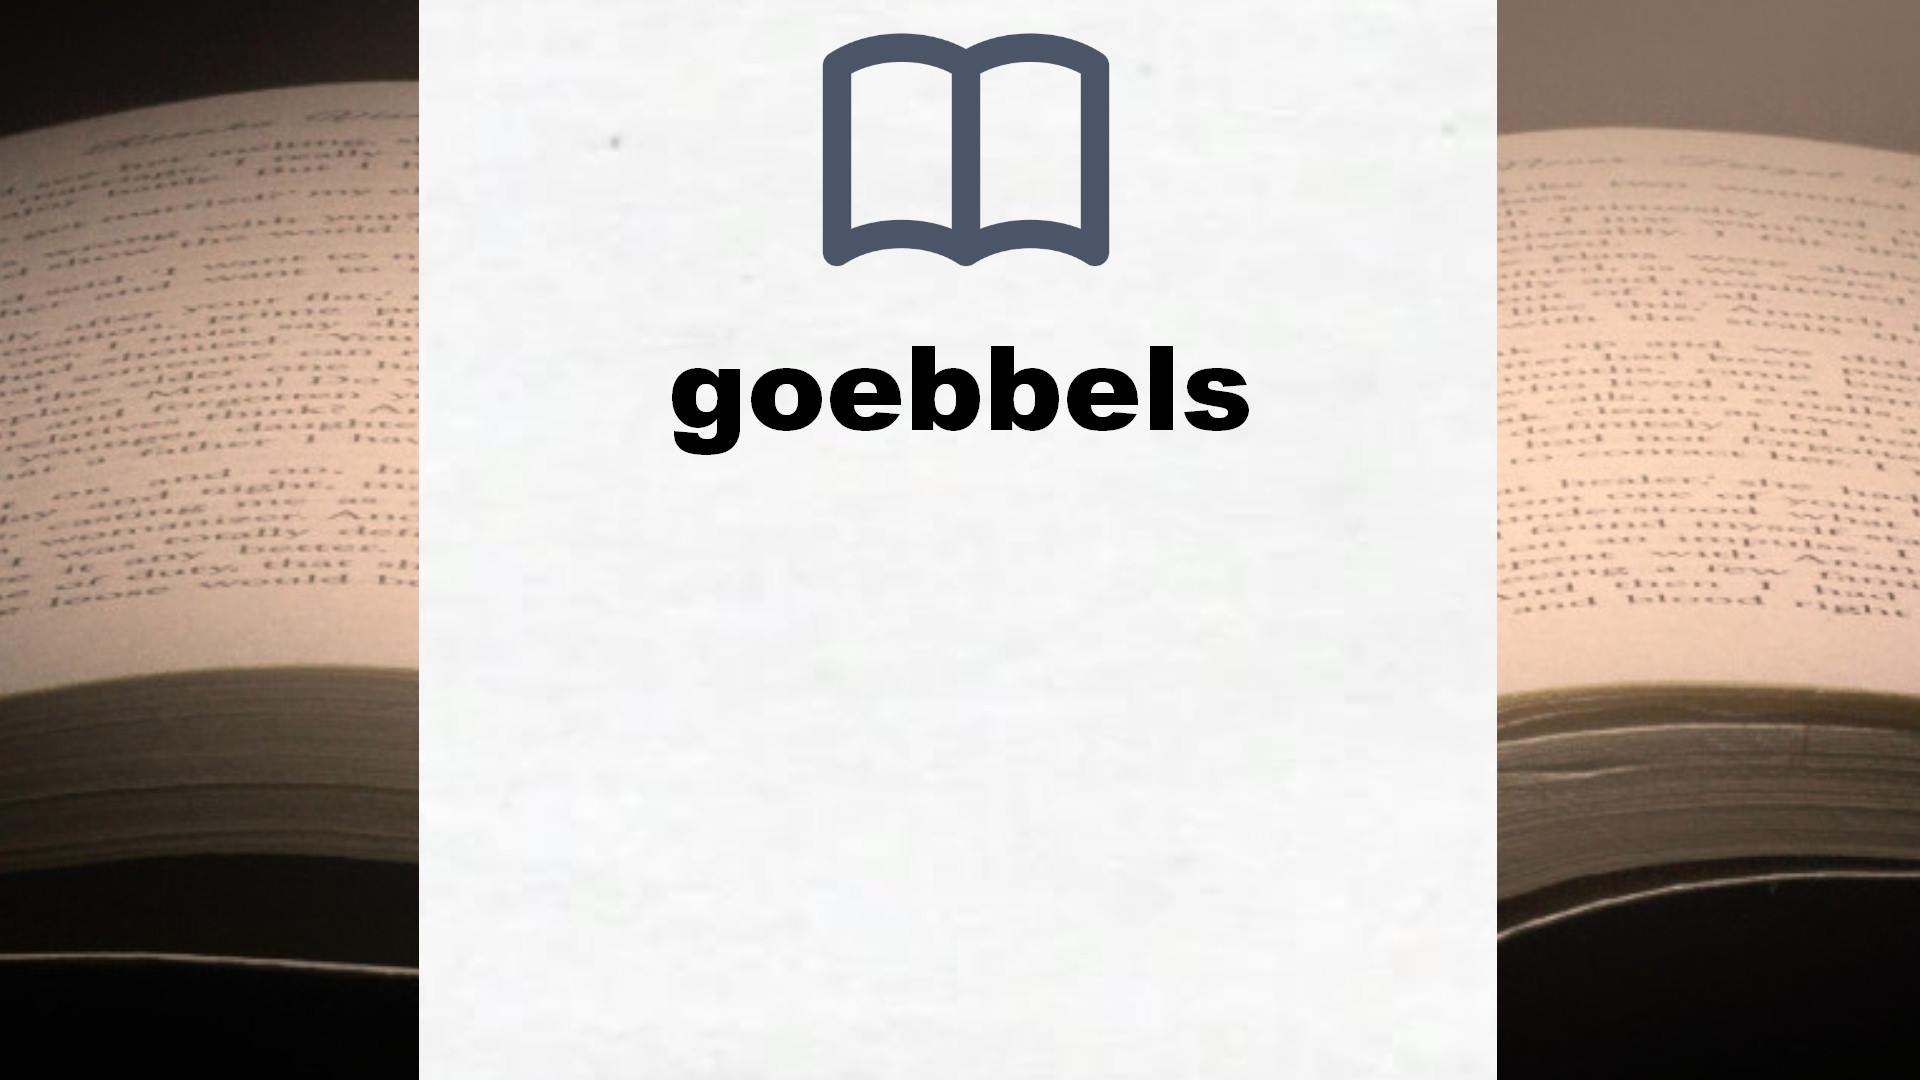 Libros sobre goebbels